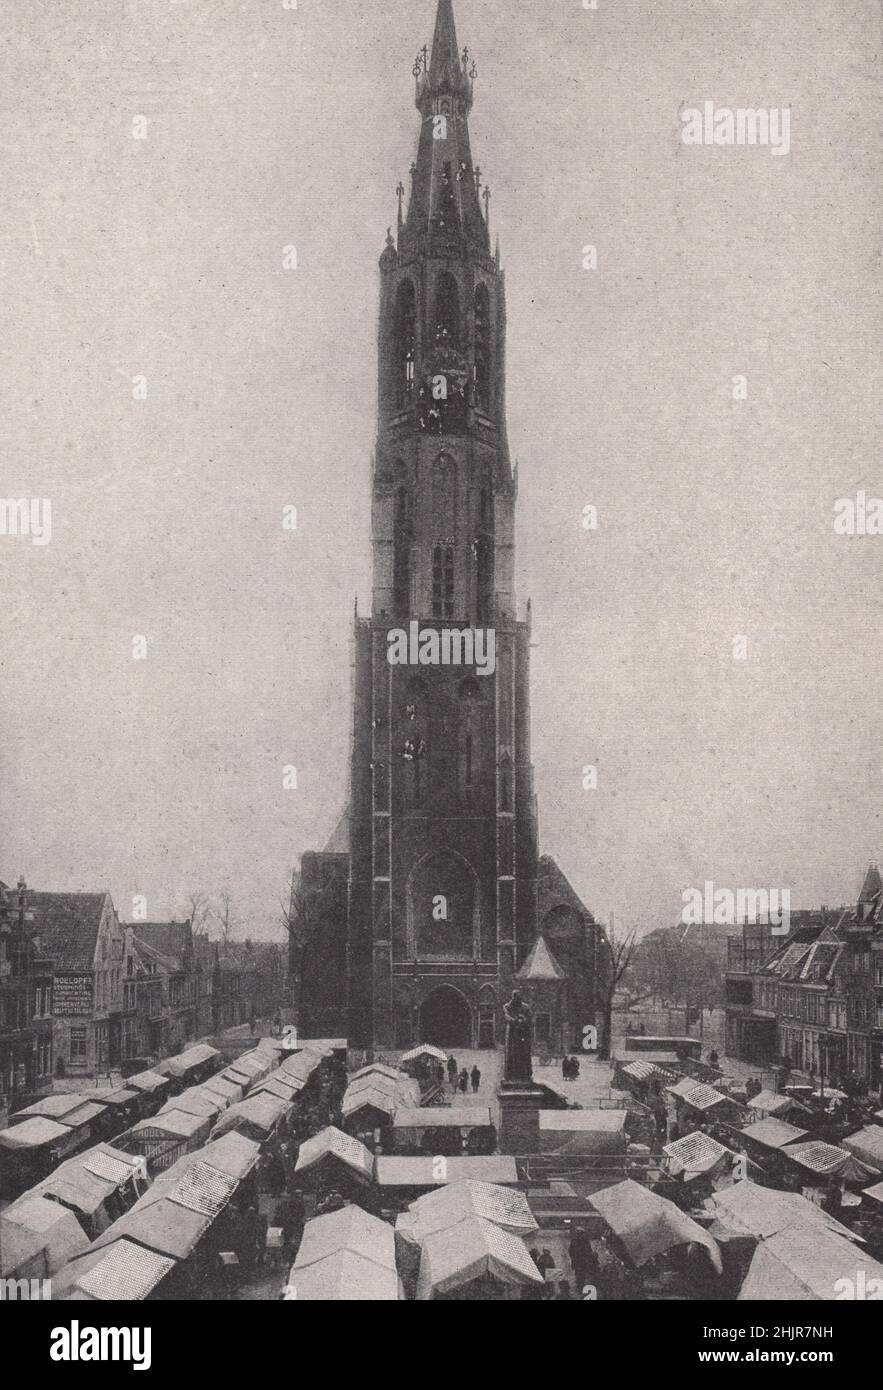 Día del mercado en el groote markt de Delft antiguo. Países Bajos. Holanda (1923) Foto de stock